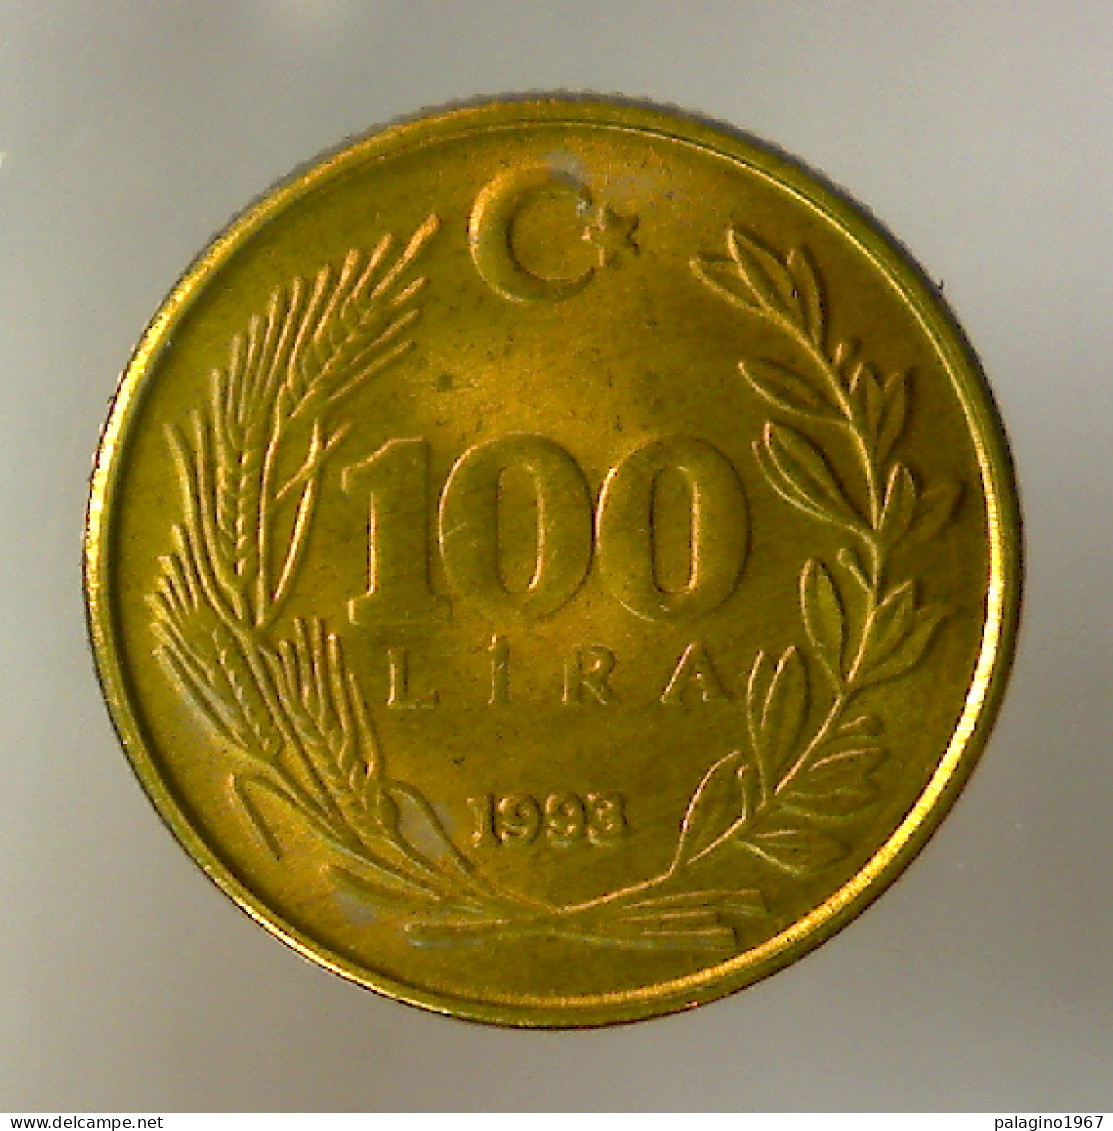 REPUBBLICA DI TURCHIA 100 Lira 1993 FDC  - Turquie